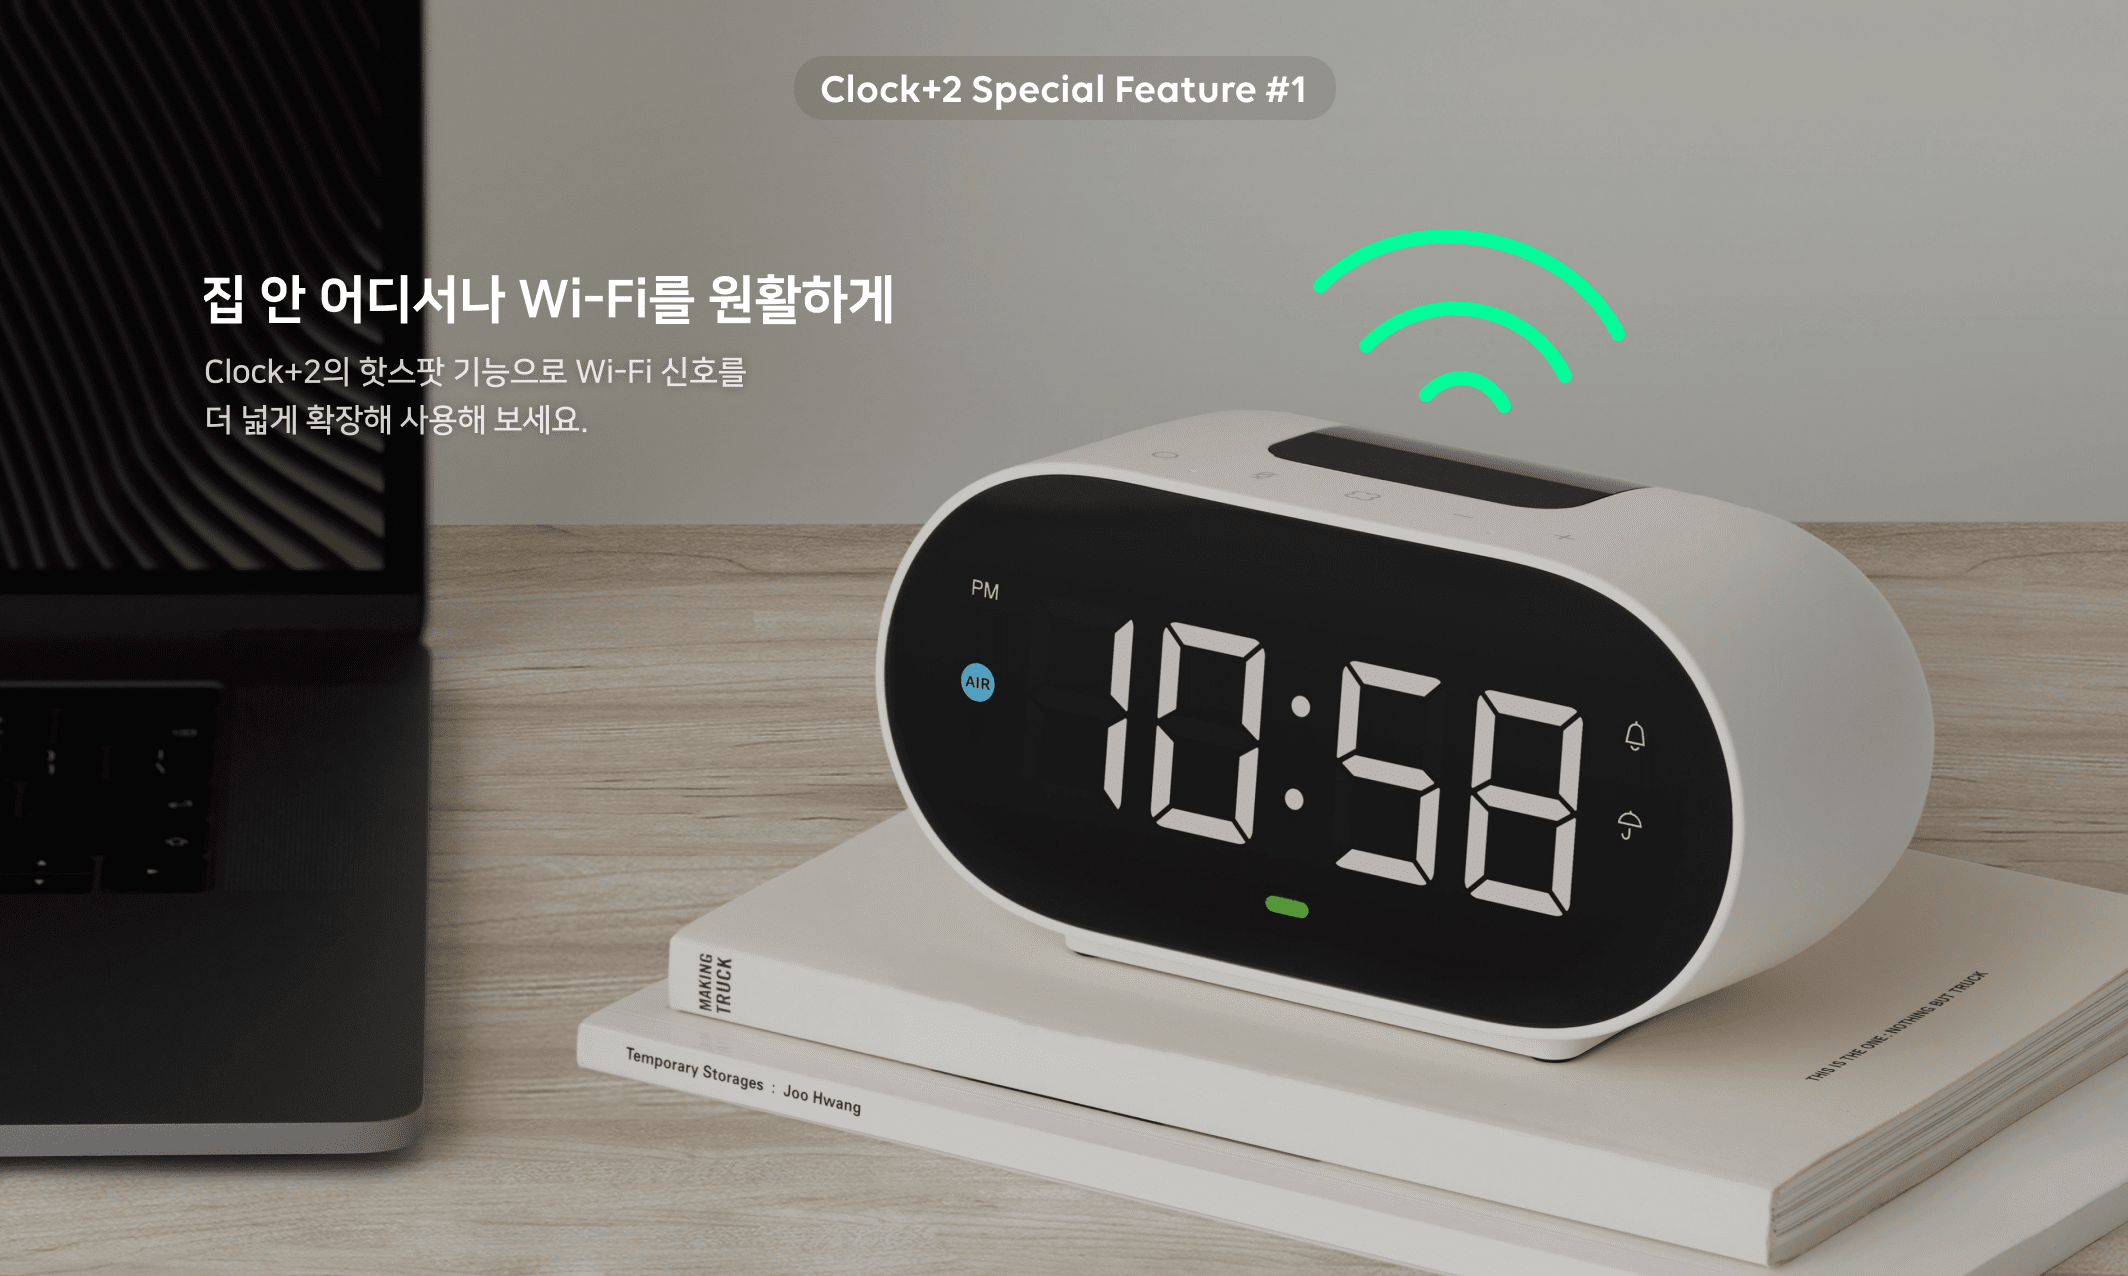 Clock+2 Special Feature 1. 집 안 어디서나 Wi-Fi를 원활하게 Clock+2의 핫스팟 기능으로 Wi-Fi 신호를 더 넓게 확장해 사용해 보세요.